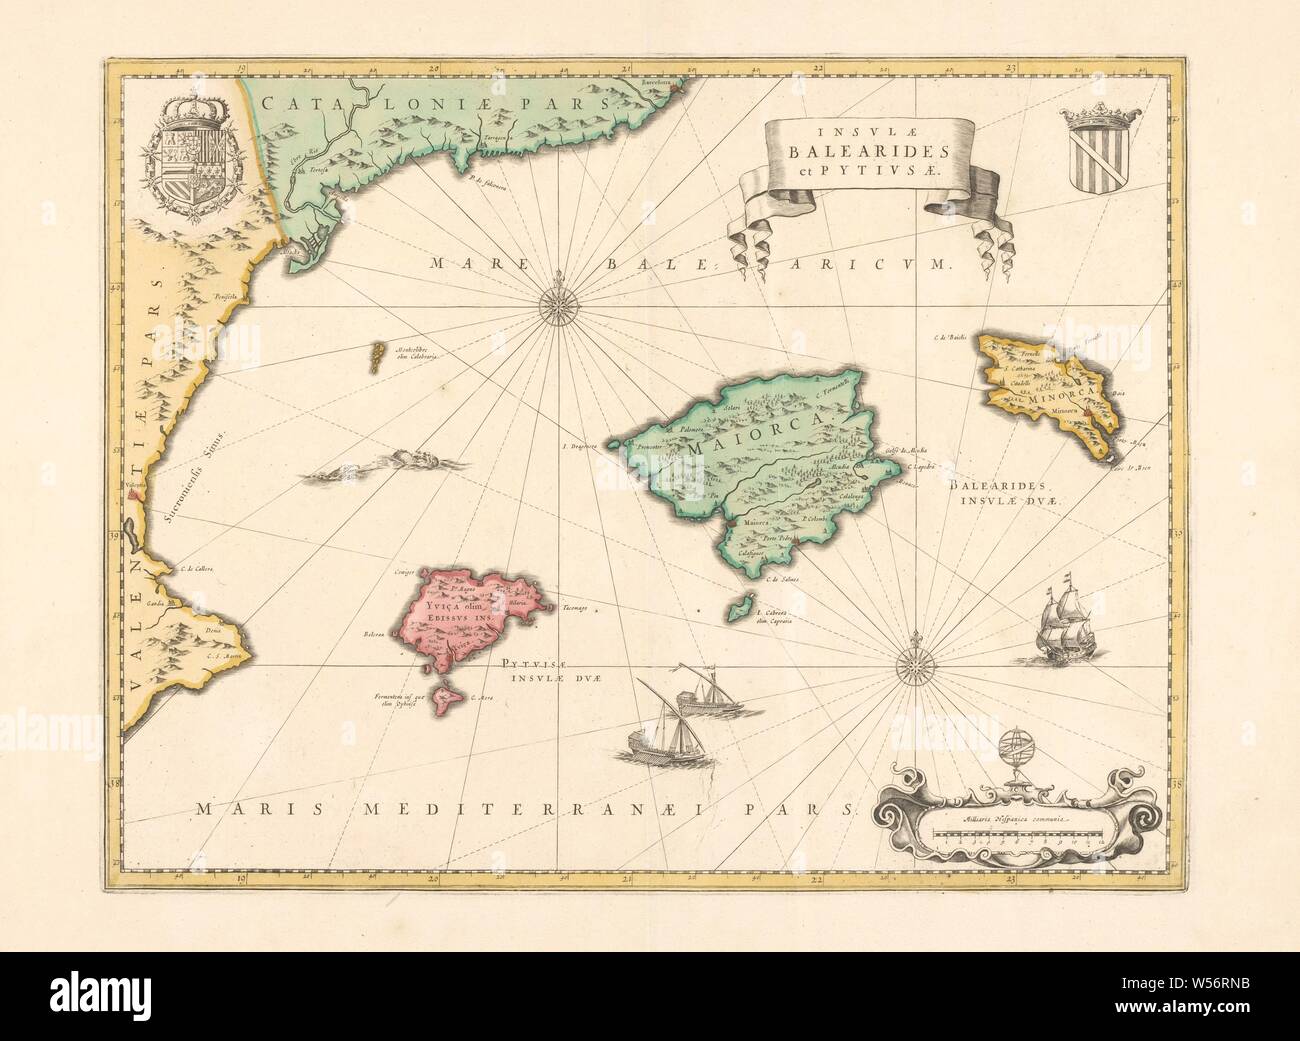 La cartographie au Pays-Bas, la carte des Baléares et Pityus et côte de l'Espagne, carte des Baléares et Pityus et partie de côte de l'Espagne, bordé de jaune, couleur, 2 rose : m.b. et r.o. Blason couronné r.b, couronné armoiries avec Golden Fleece l.b .. Les navires dans la mer, r.o. échelle dans l'espagnol miles avec un globe sur elle. Inscription, R. B. . : INSVLAE PITYVSAE / BALEARIDES / et, Îles Baléares, Willem Janszoon Blaeu, Amsterdam, 1600 - 1650, papier, gravure, h 37,9 cm × w 49,2 cm Banque D'Images